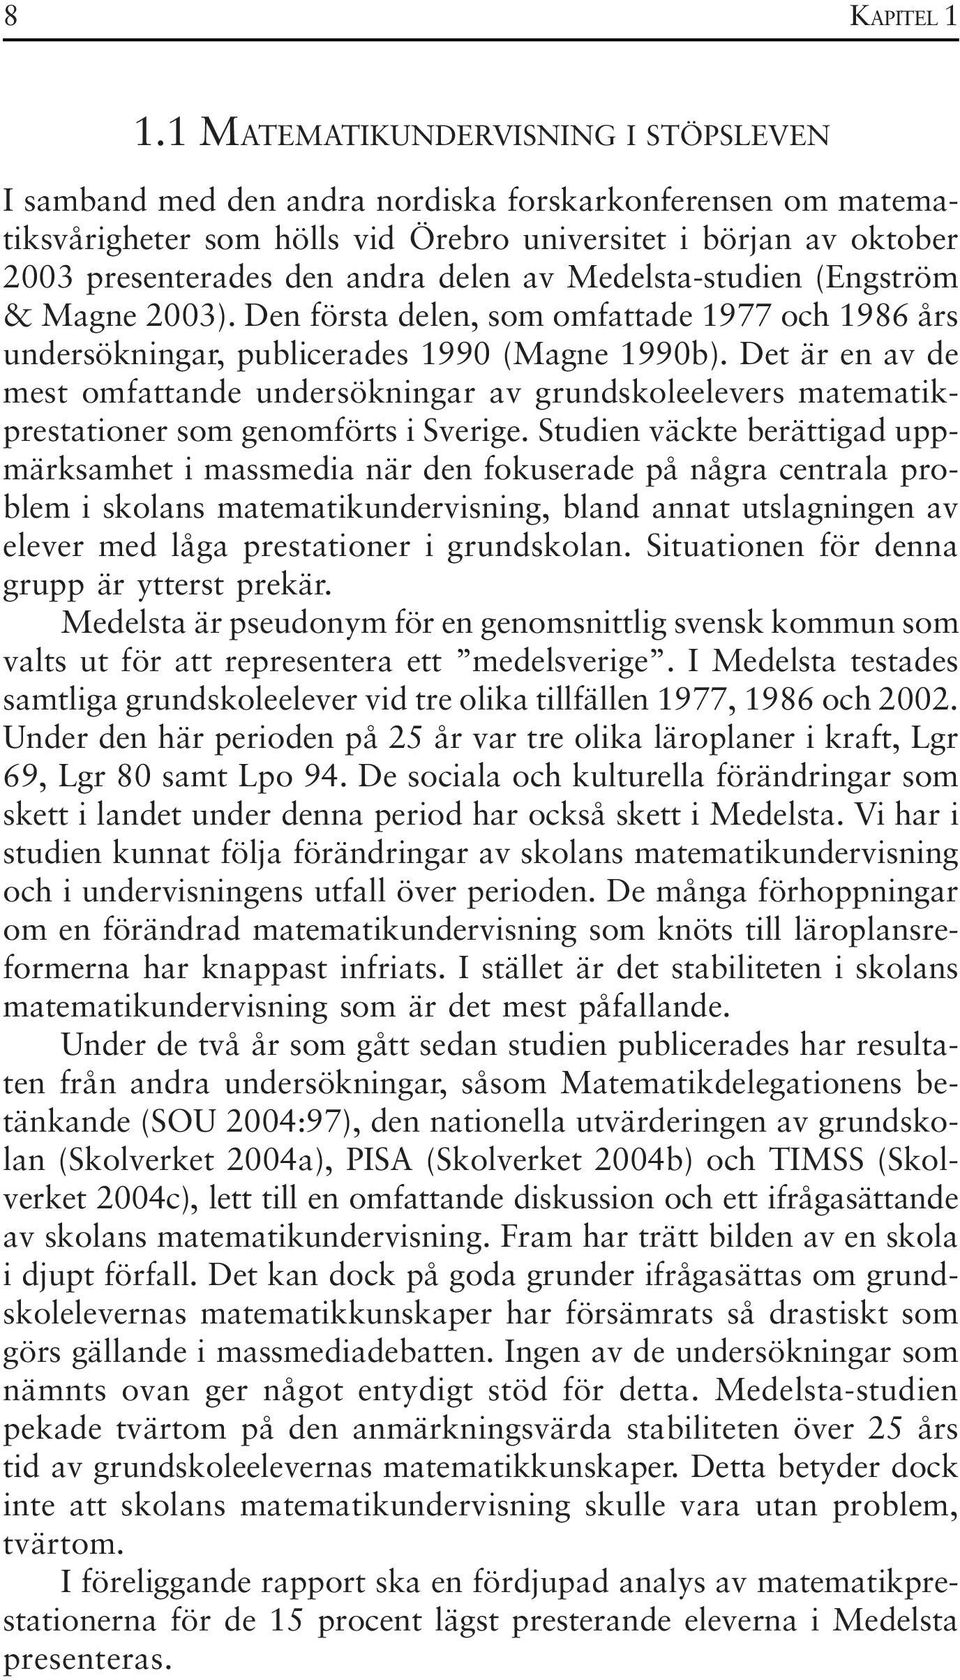 delen av Medelsta-studien (Engström & Magne 2003). Den första delen, som omfattade 1977 och 1986 års undersökningar, publicerades 1990 (Magne 1990b).